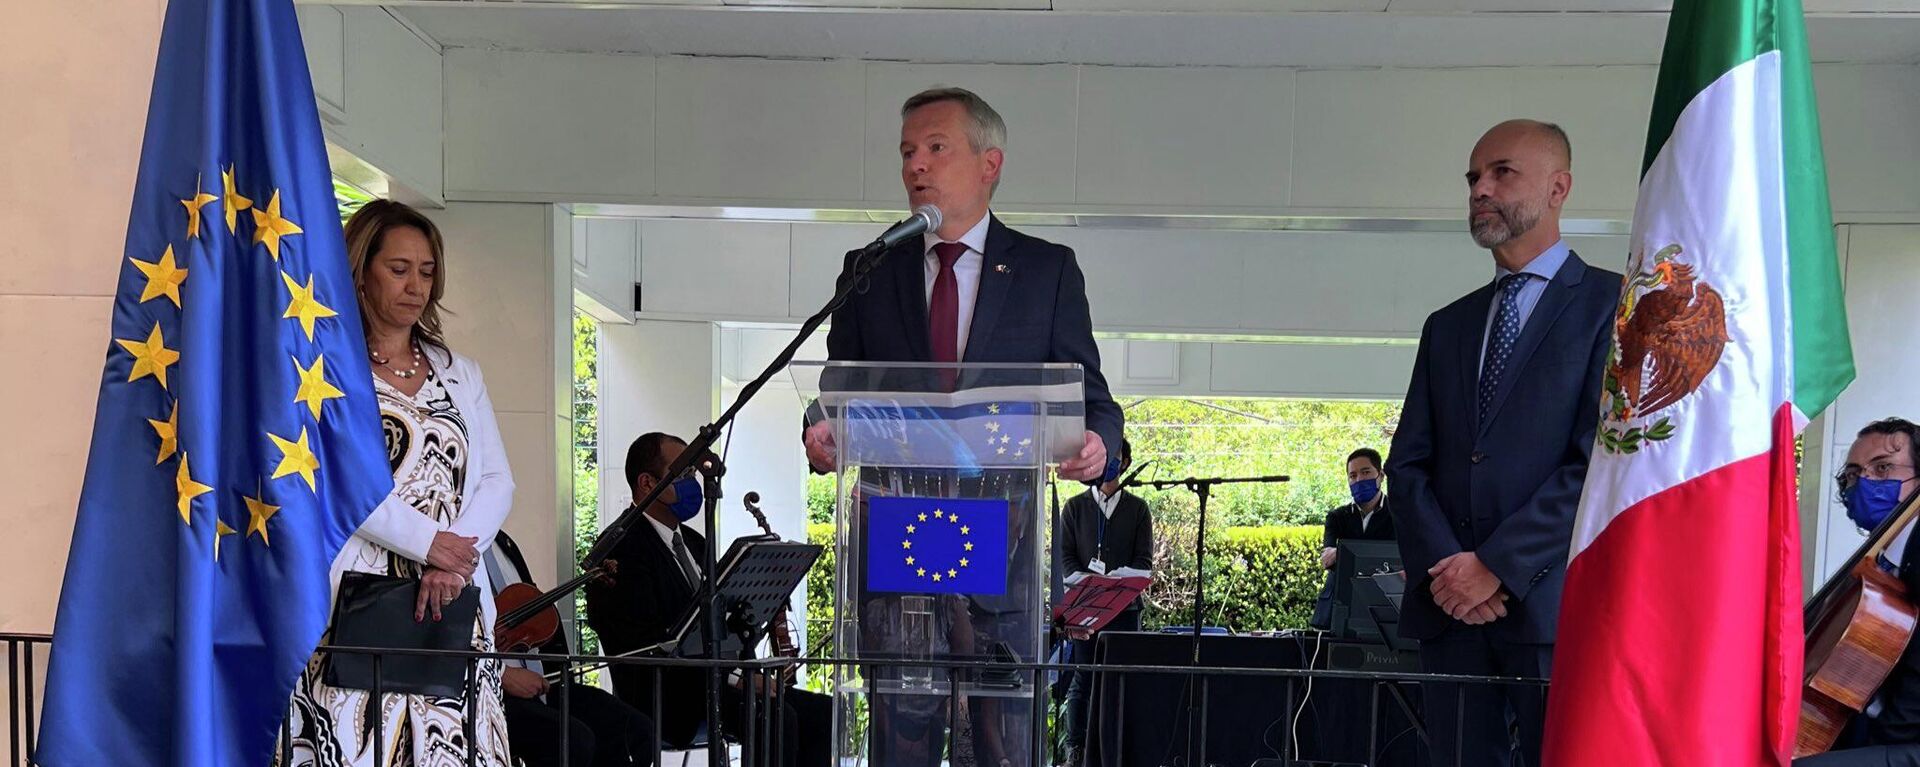 Gautier Mignot, embajador de la Unión Europea en México, durante un evento en la capital mexicana - Sputnik Mundo, 1920, 10.05.2022